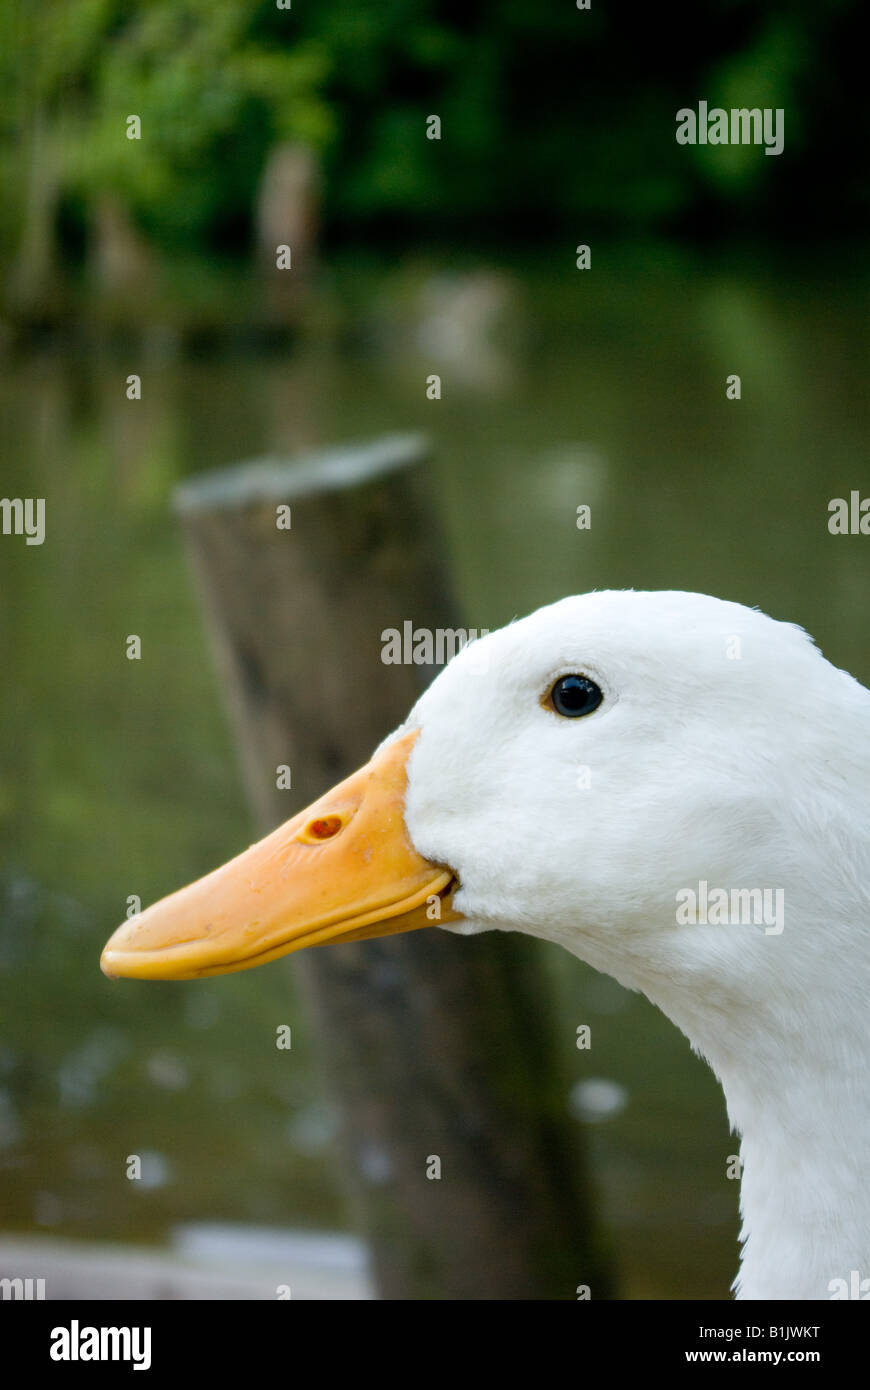 White goose Stock Photo